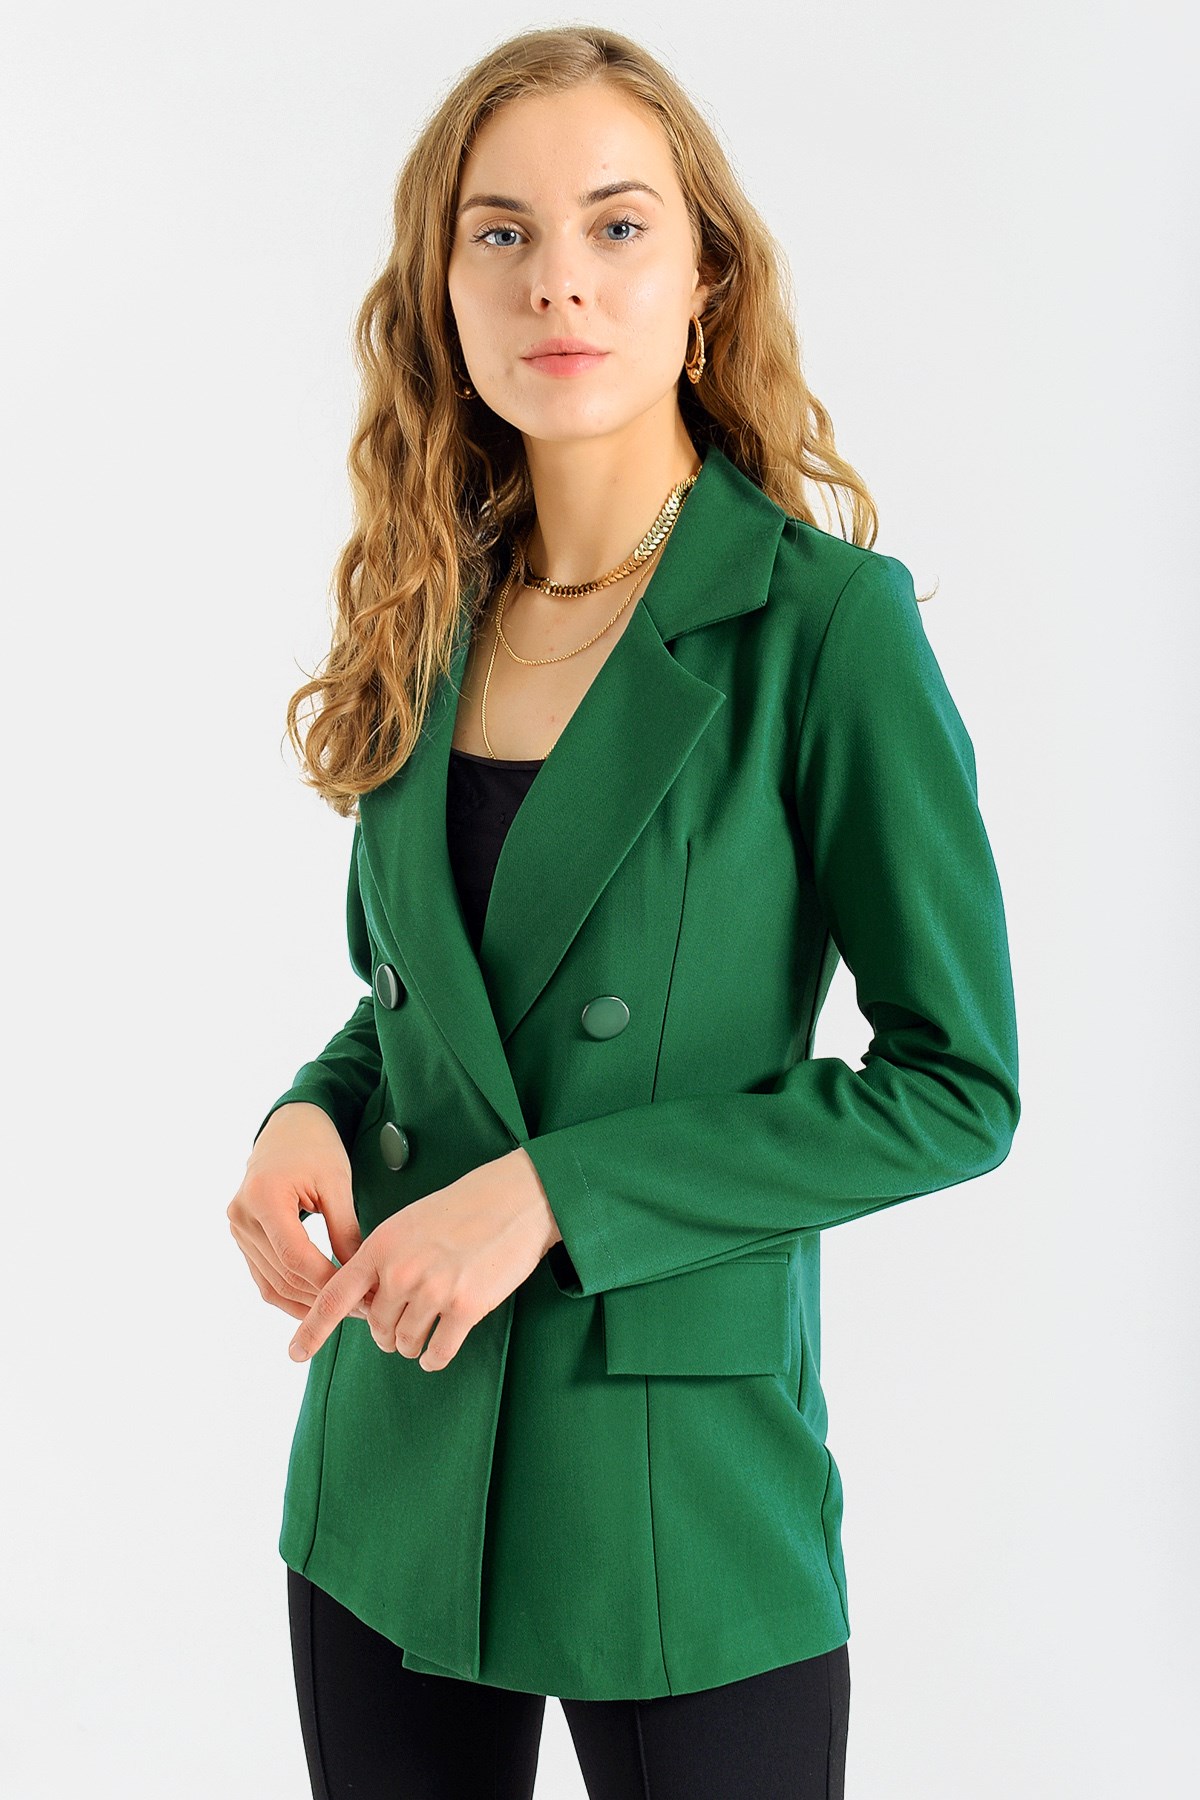 Kadın Düğme Detaylı Uzun Kol Şık Ofis Süs Cep Kapaklı Kumaş Blazer Ceket-K.Yeşil  37013 | Jument.com.tr